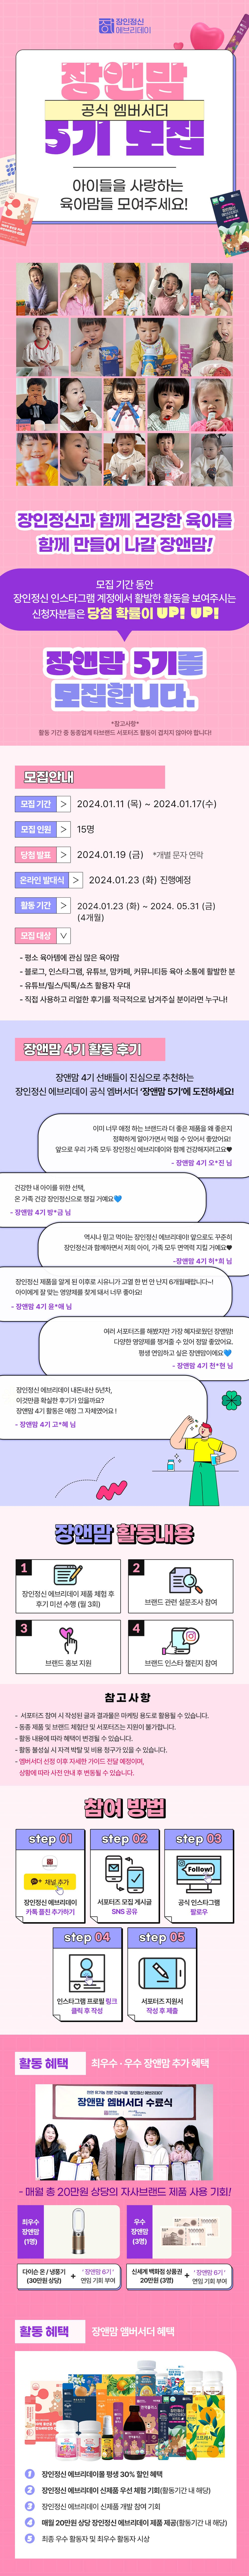 장인정신 에브리데이 공식 엠버서더 '장앤맘 5기' 모집